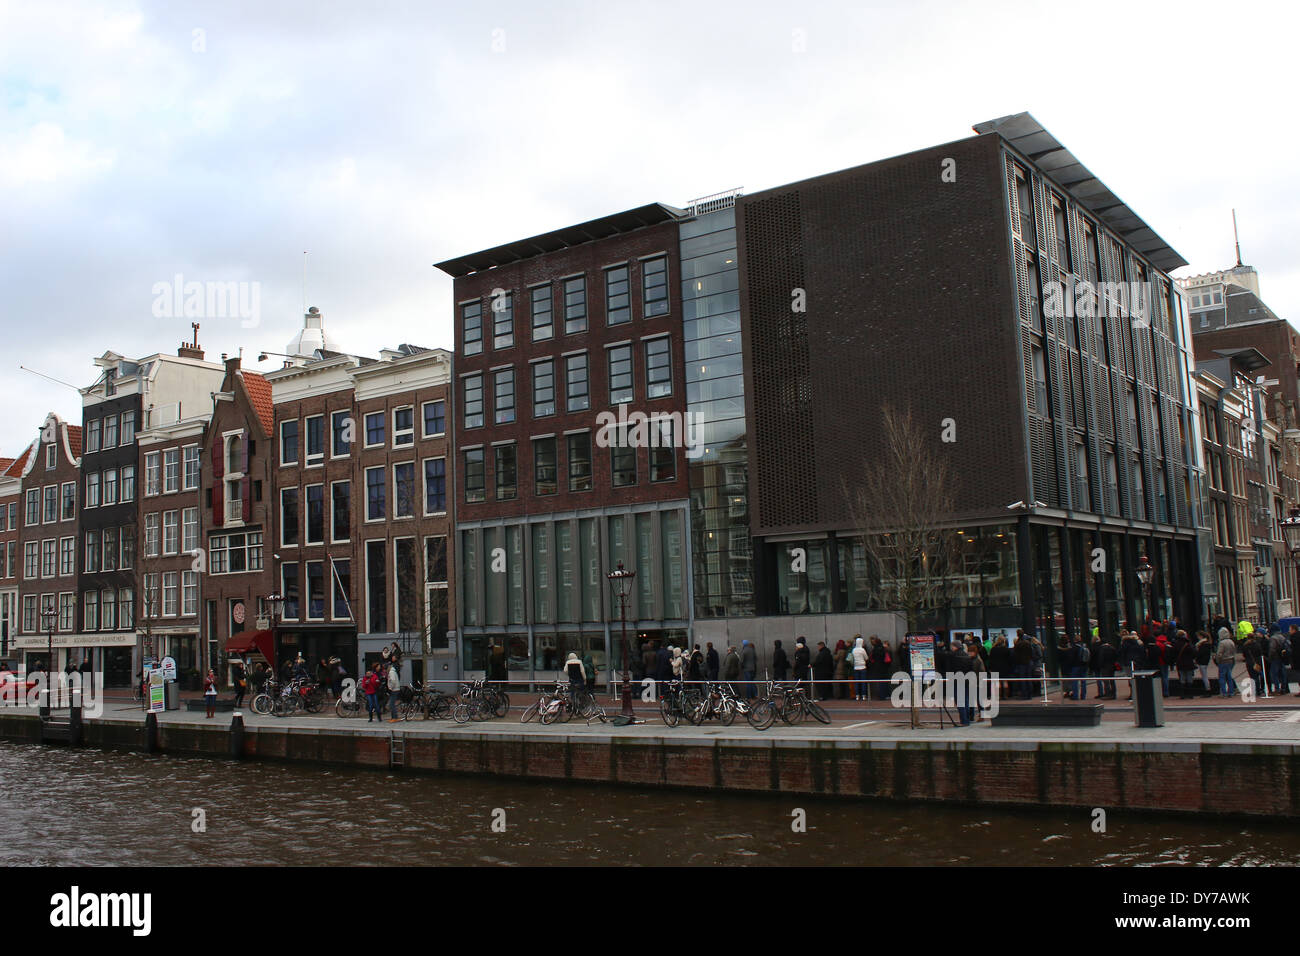 Menschen stehen in der Schlange vor dem Anne Frank Haus Museum (Achterhuis/Hinterhaus) am Prinsengracht Kanal, Jordaan-Viertel, im Zentrum von Amsterdam Stockfoto